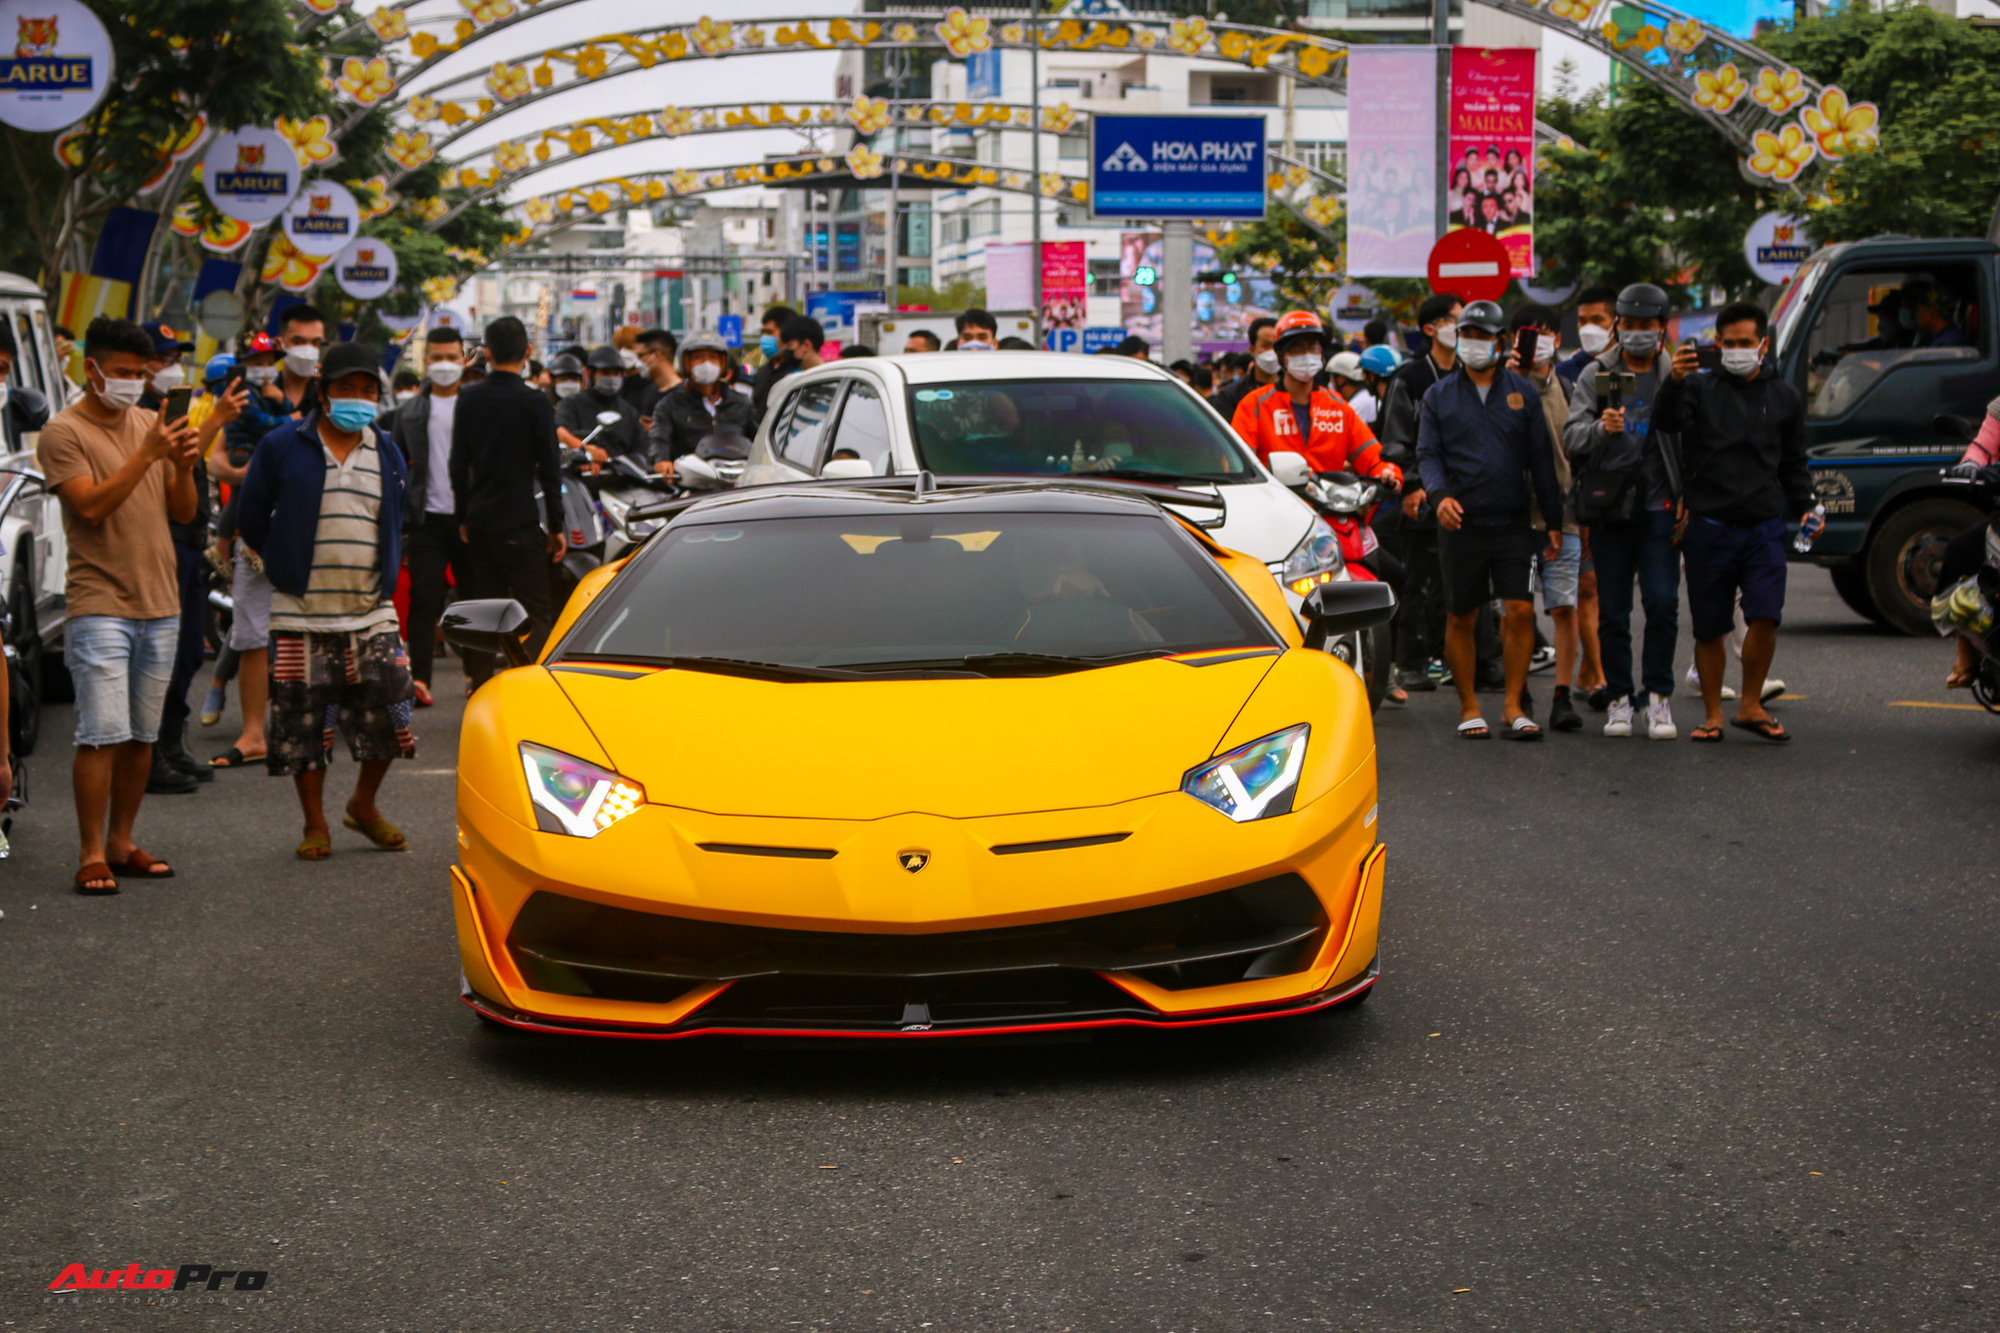 Vừa hết tour Đà Nẵng với Koenigsegg Regera, Lamborghini Aventador SVJ Roadster đầu tiên tại Việt Nam bất ngờ xuất hiện tại Cần Thơ - Ảnh 4.